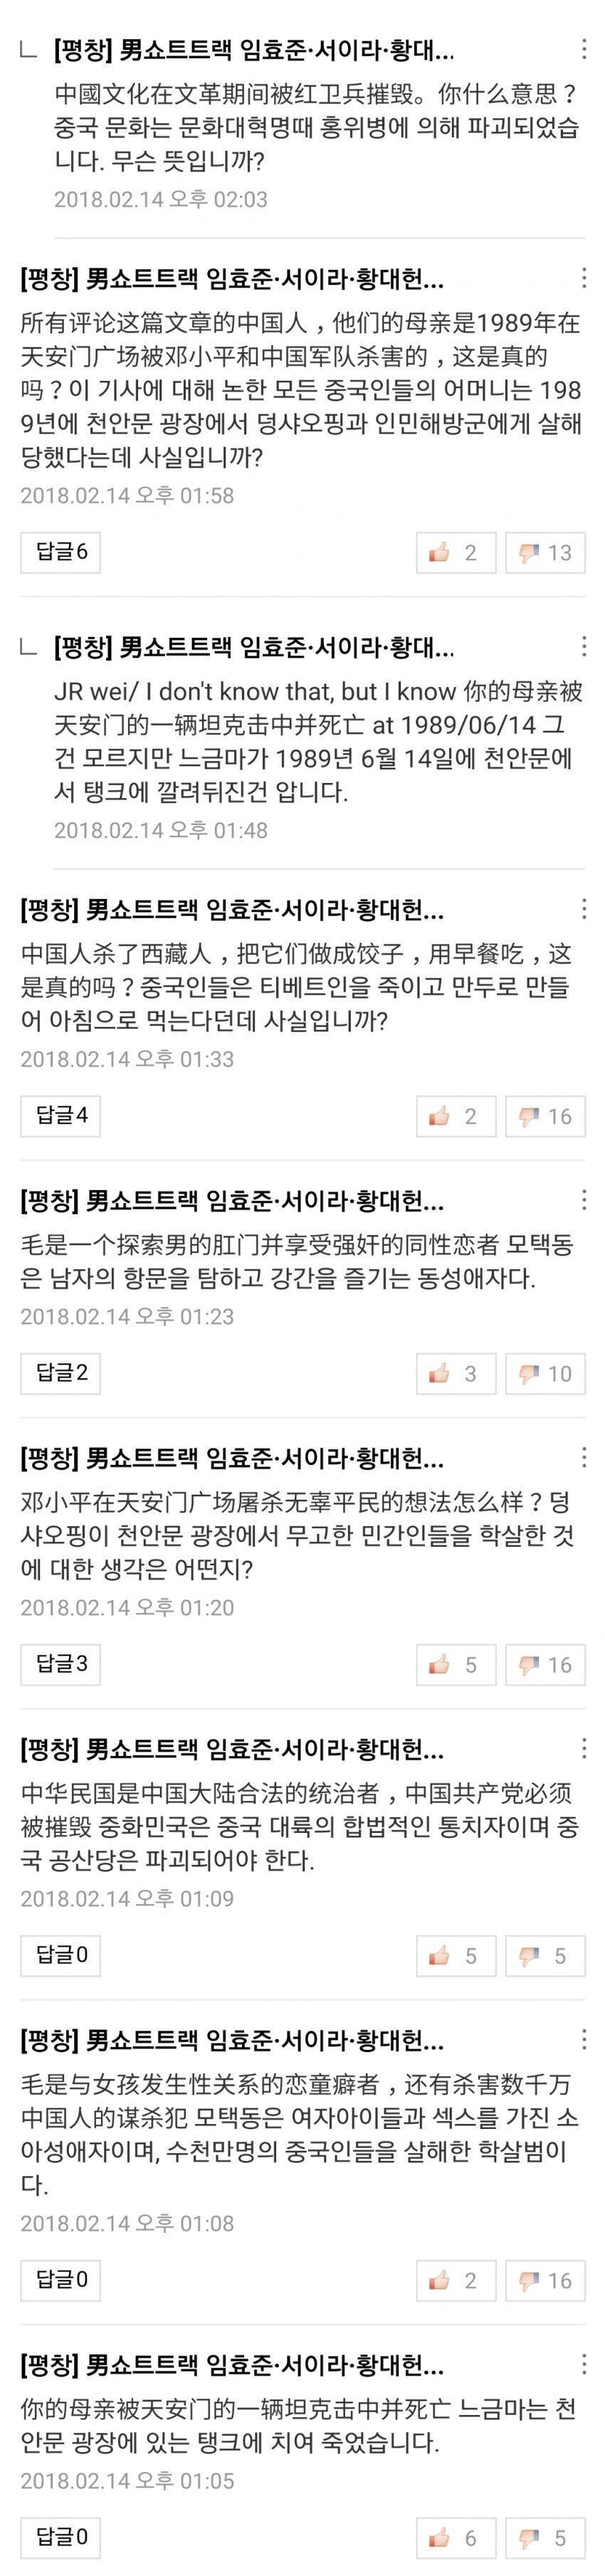 중국 네이버 폭격에 대응하는 한국 네티즌들의 자세.jpg | 인스티즈